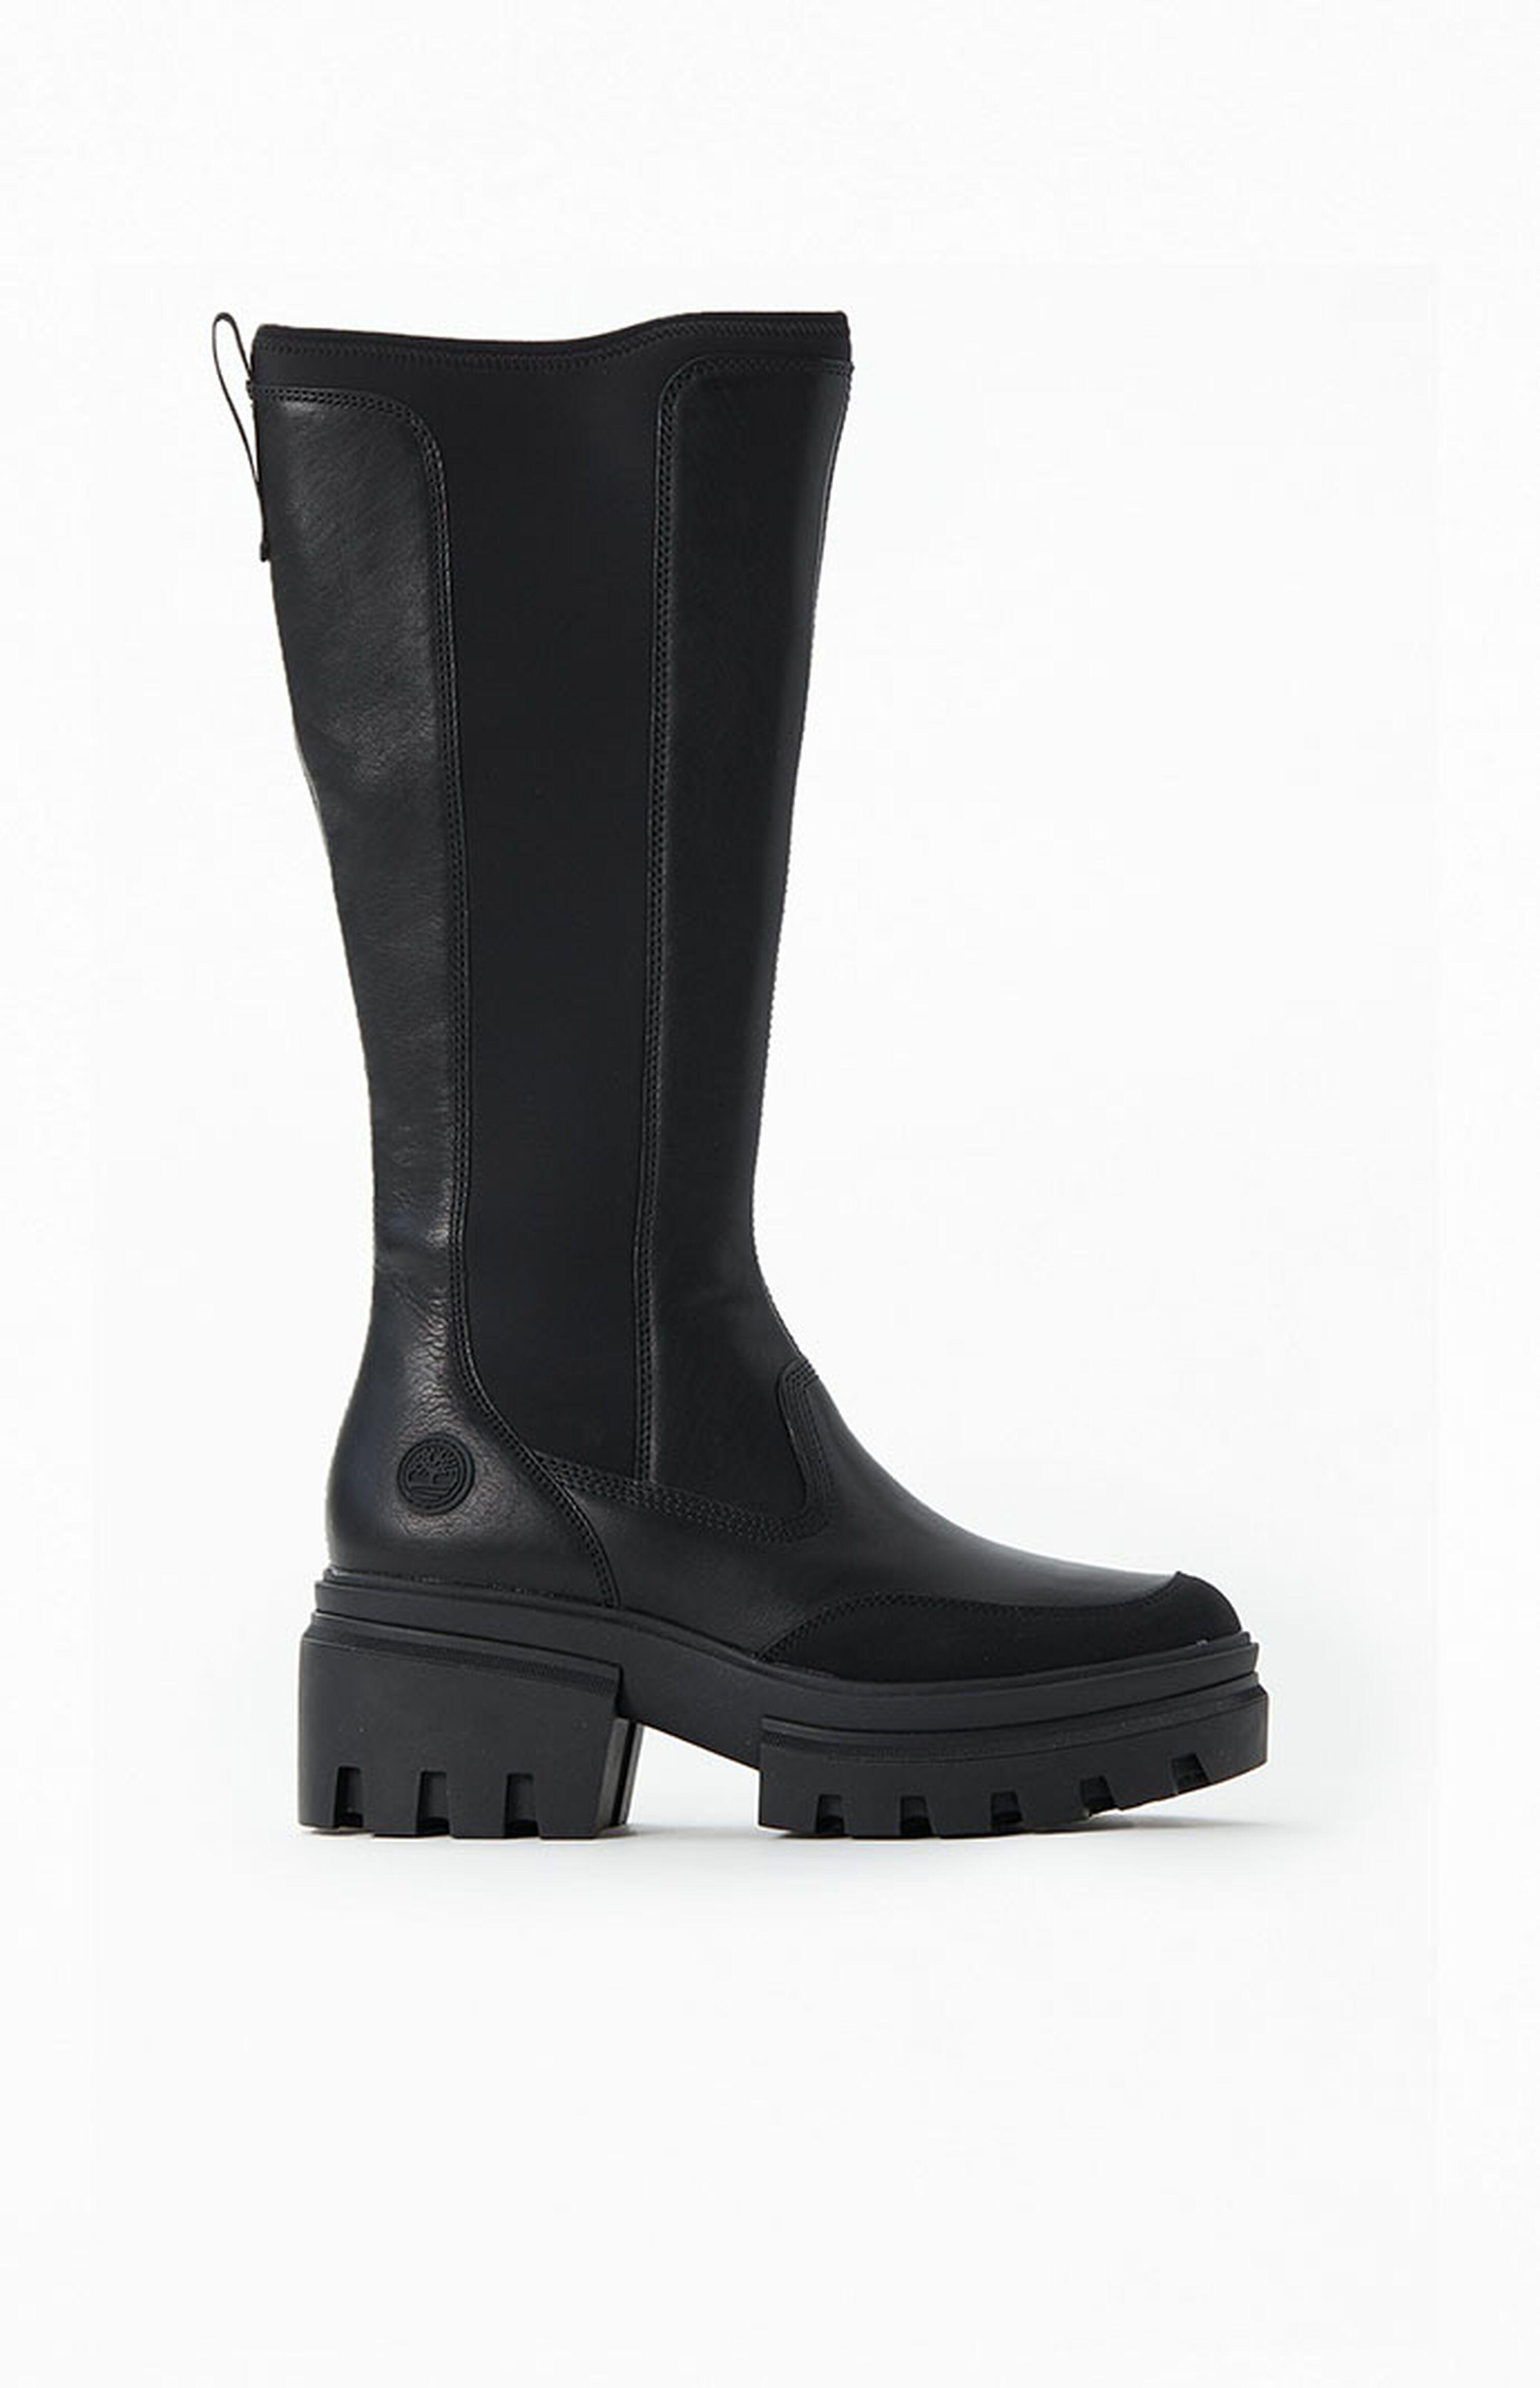 Timberland Women’s Black Everleigh Tall Boots | PacSun